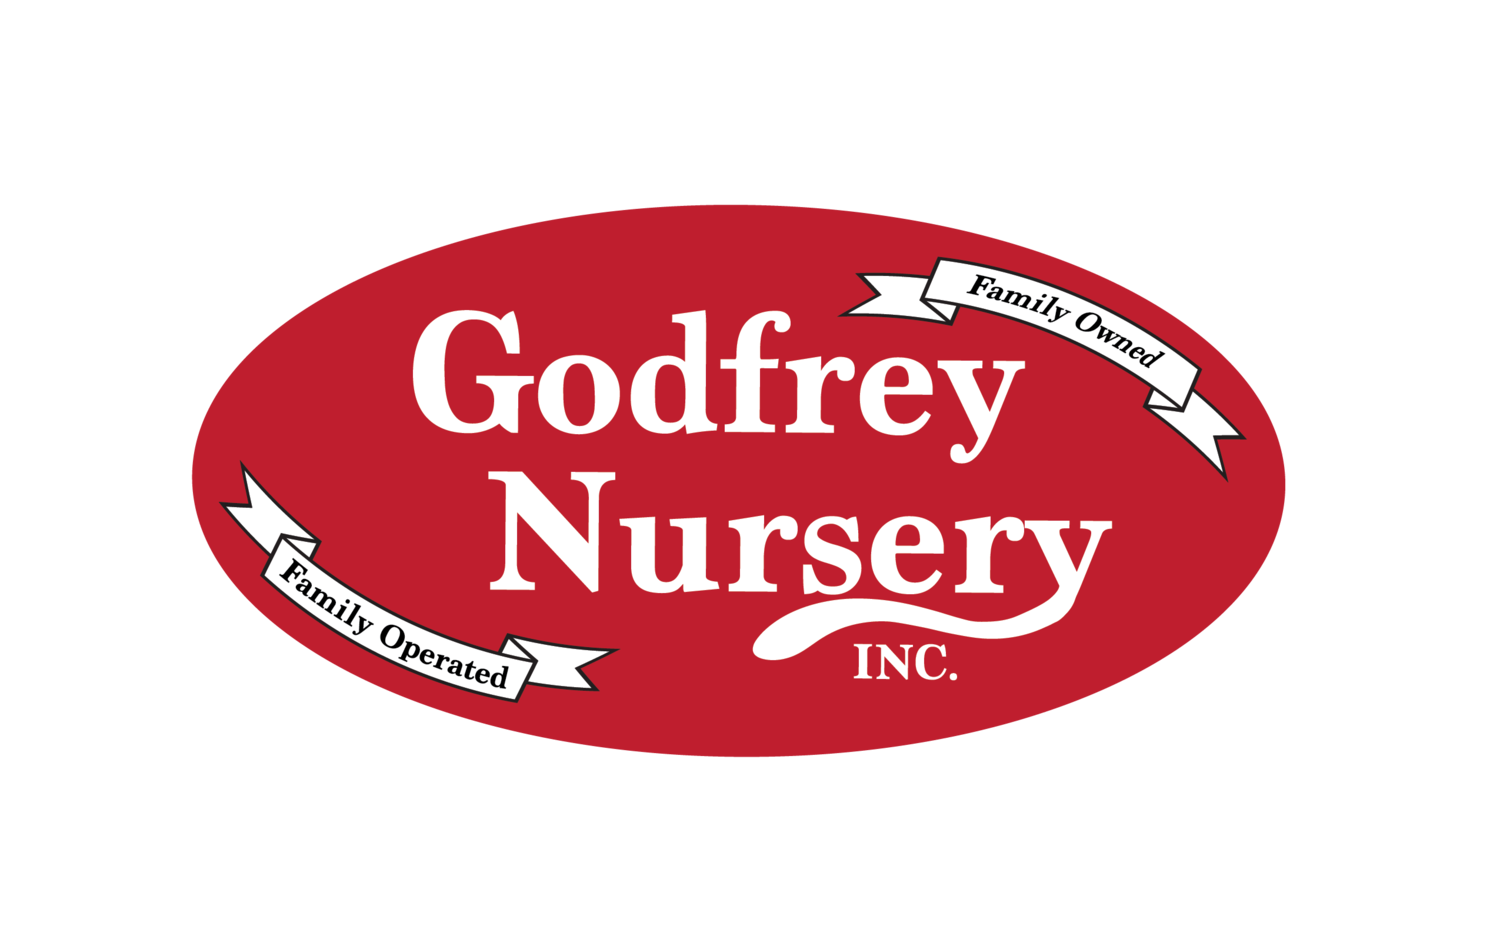 Company logo of Godfrey Nursery